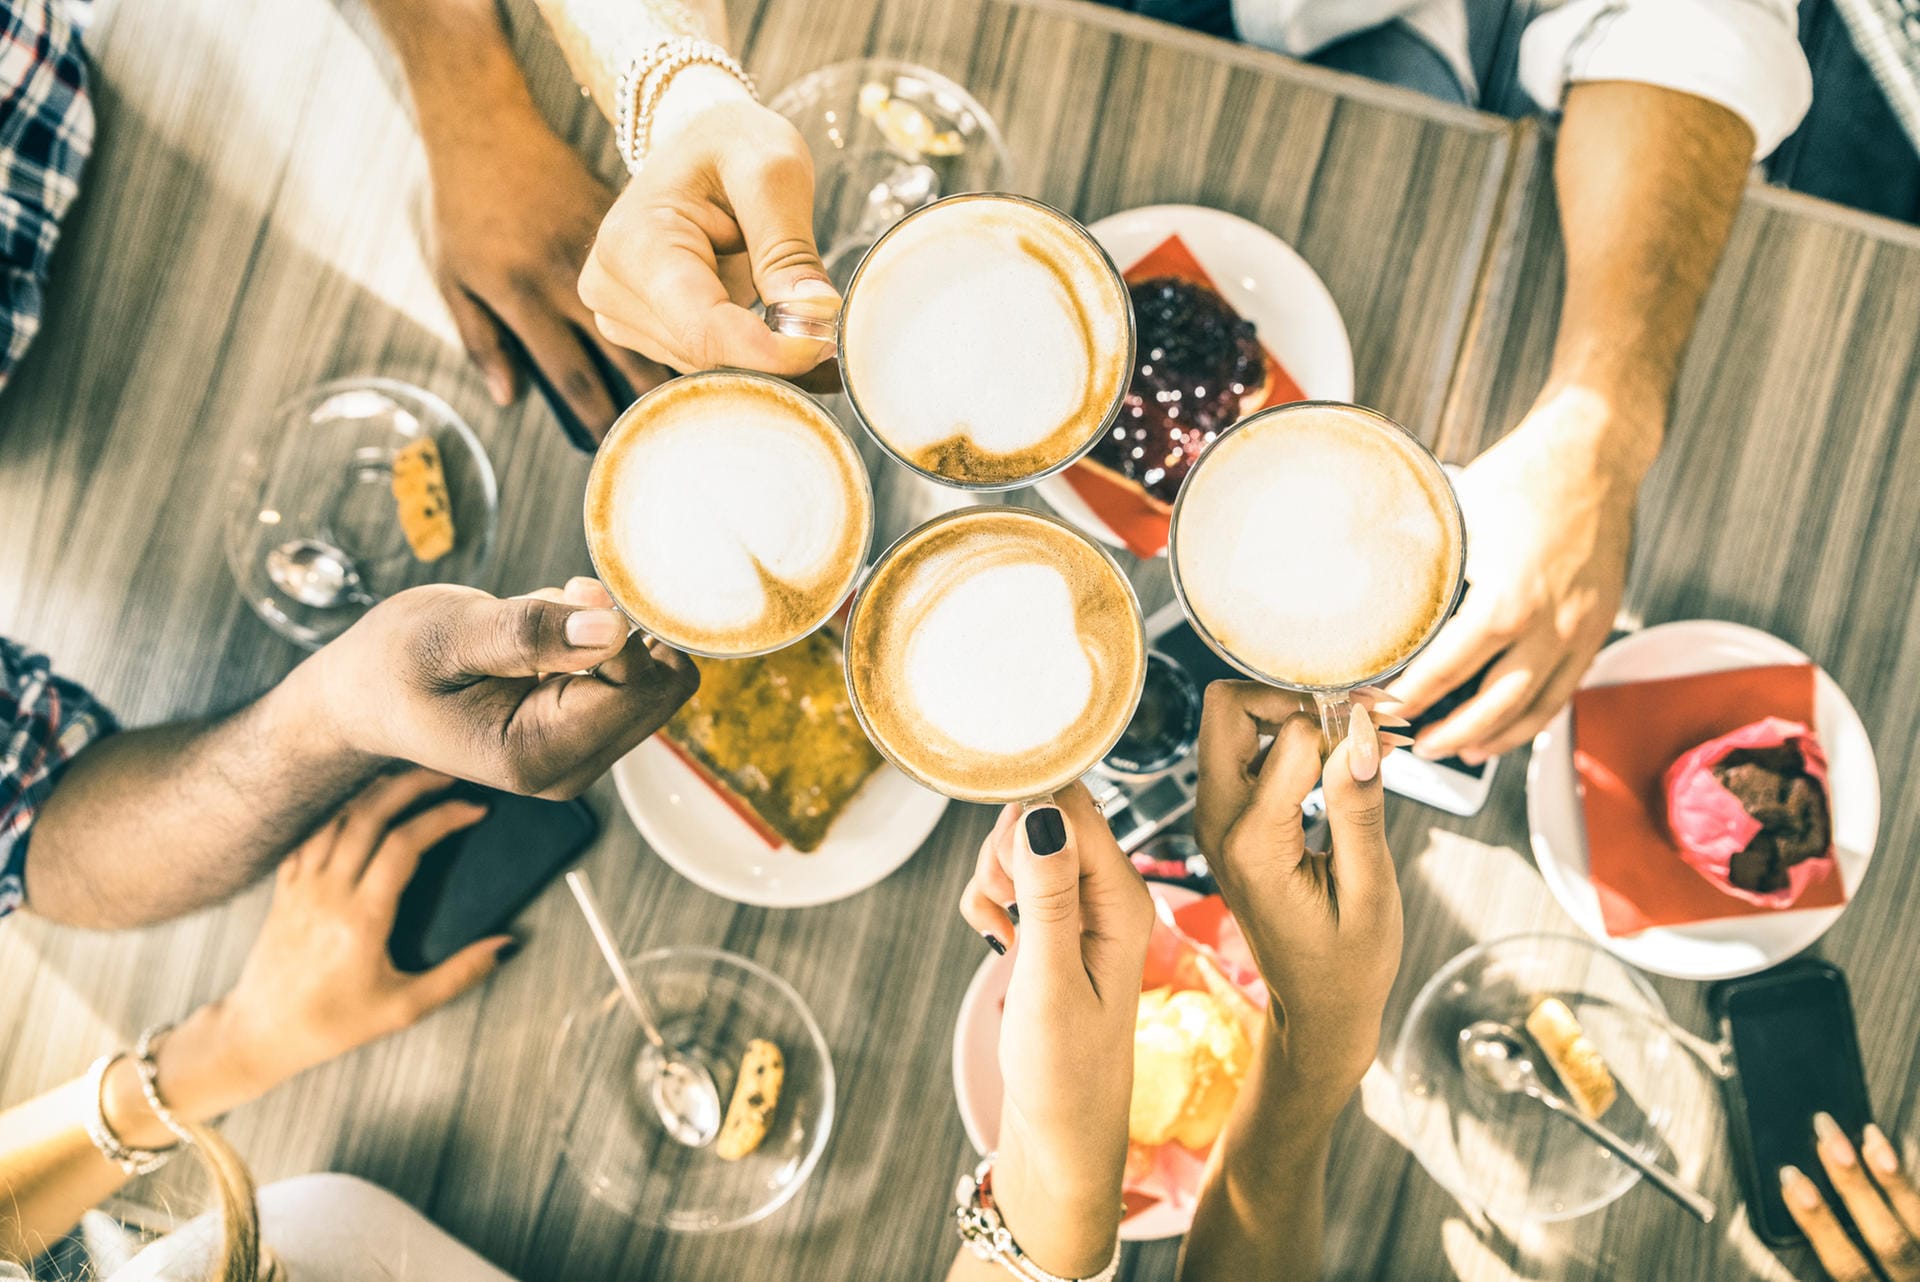 Den größten positiven Effekt erreichen Menschen, die zwei bis vier Tassen Kaffee am Tag trinken, im Vergleich zu denen, die überhaupt keinen Kaffee zu sich nehmen. Kaffeetrinker können ihr Risiko für bestimmte Krankheiten deutlich senken.